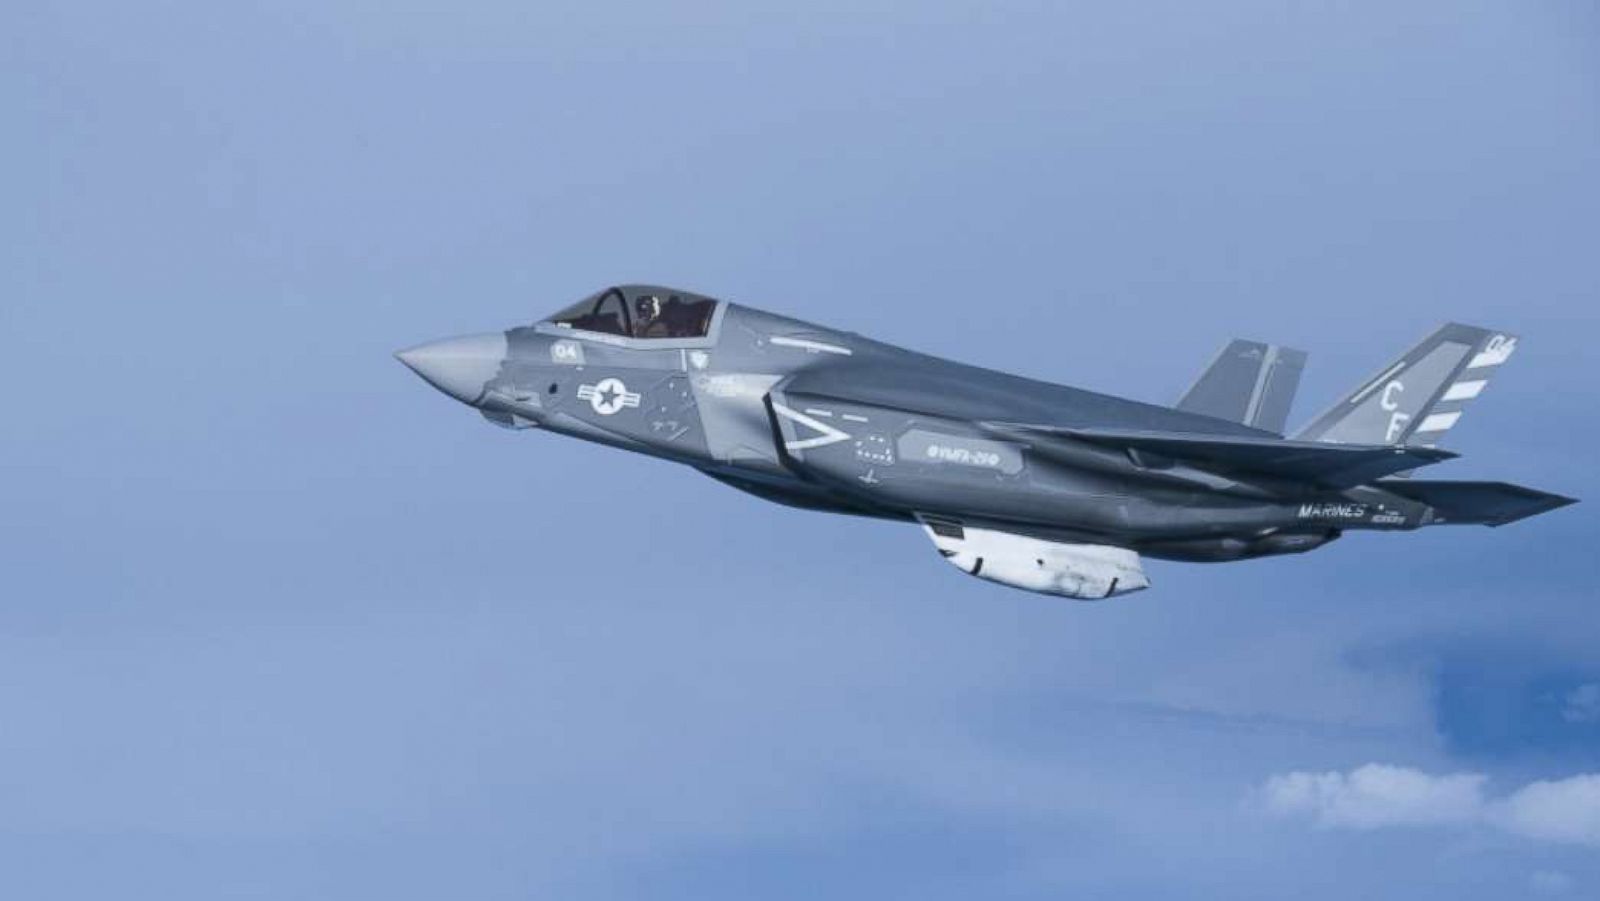 Υπερβολικά κόστη, ατυχήματα και έντονο παρασκήνιο: Το RT εξετάζει το F-35 με λεπτομέρεια